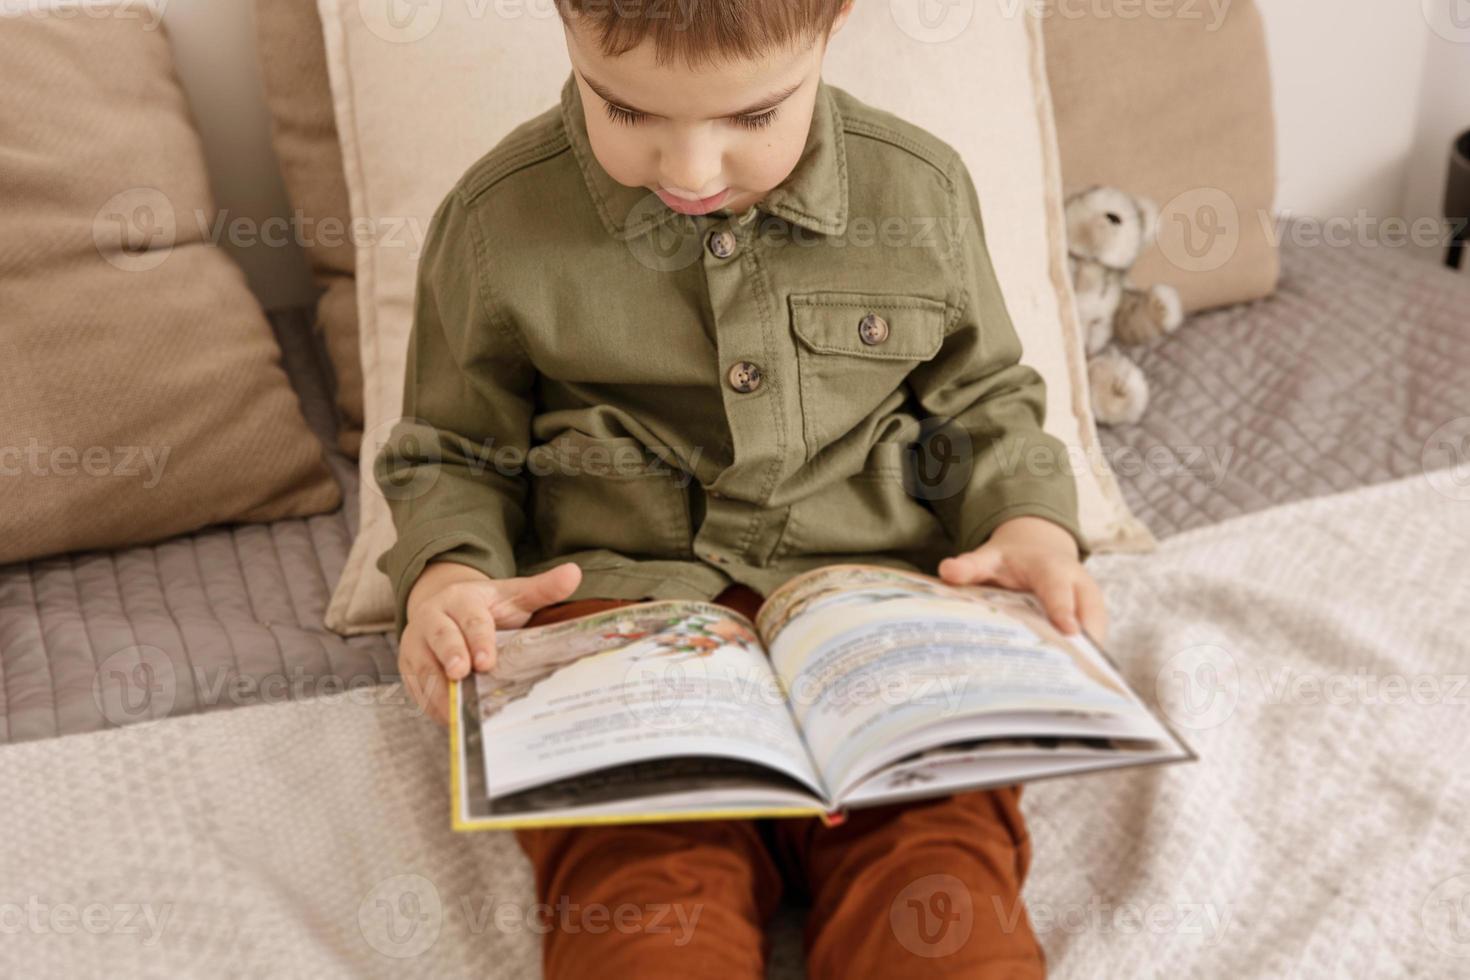 kleiner und süßer kaukasischer junge, der zu hause ein buch auf dem bett liest. Interieur und Kleidung in natürlichen Erdfarben. gemütliche Umgebung. Kind liest ein Märchen. selektiver Fokus. foto